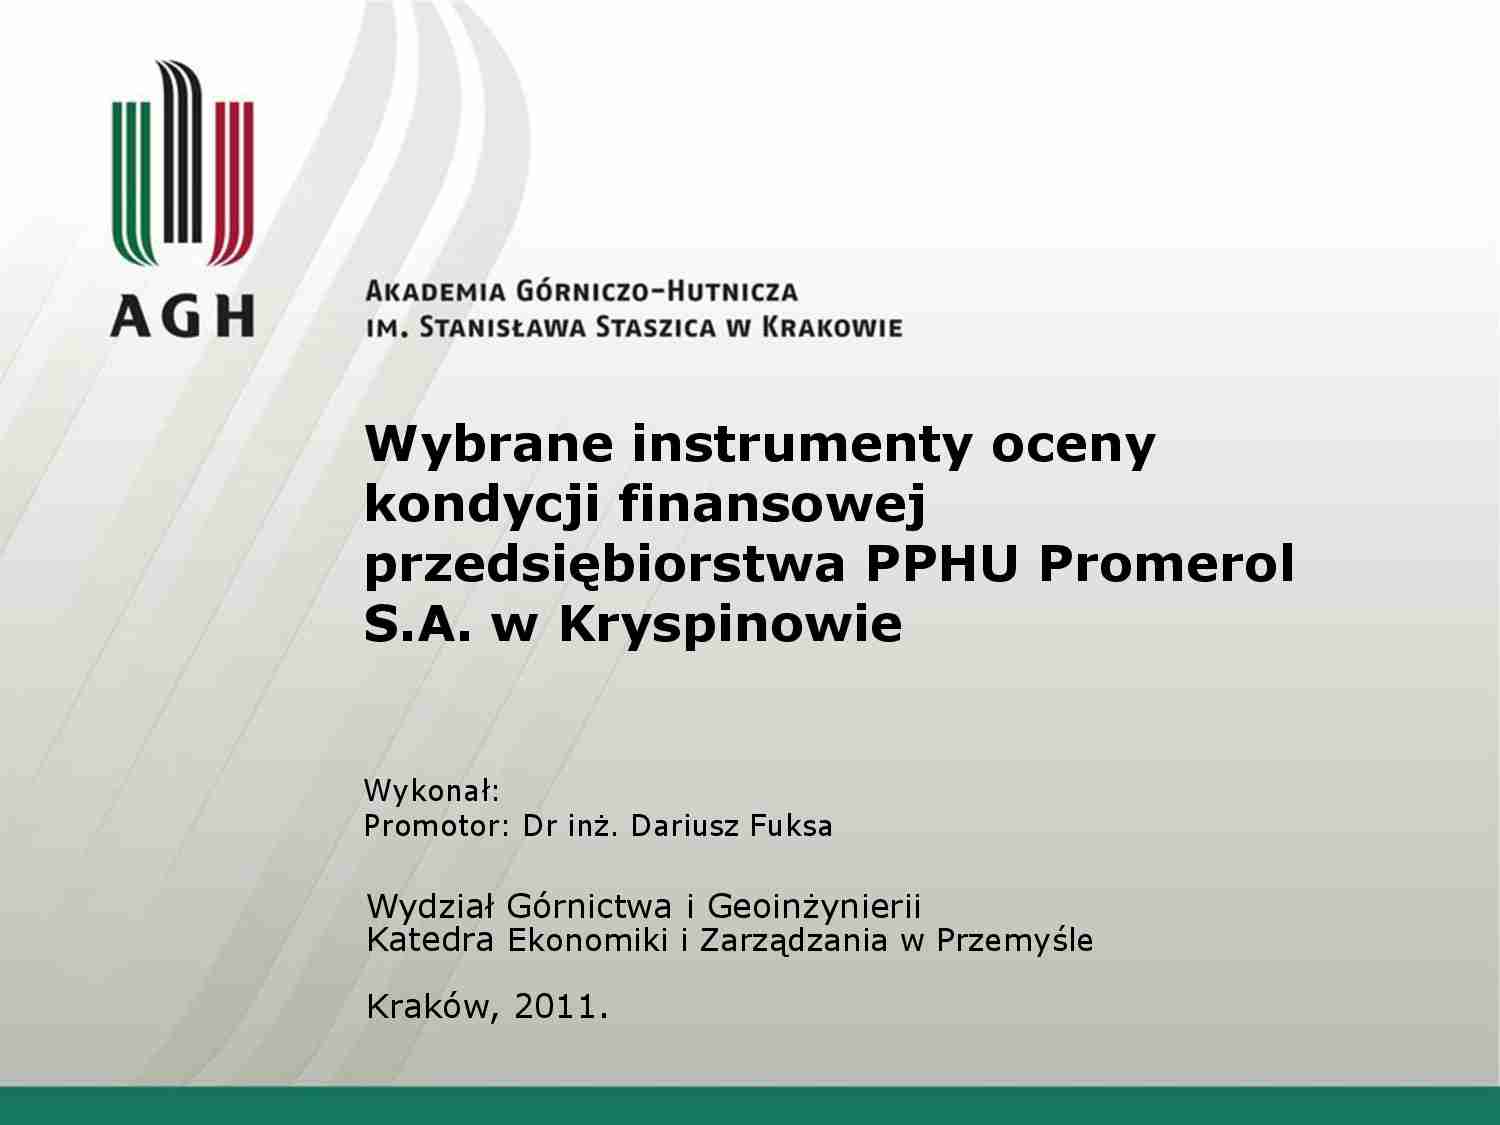 Instrumenty oceny kondycji finansowej przedsiębiorstwa PPHU Promerol S.A. w Kryspinowie - prezentacja - strona 1